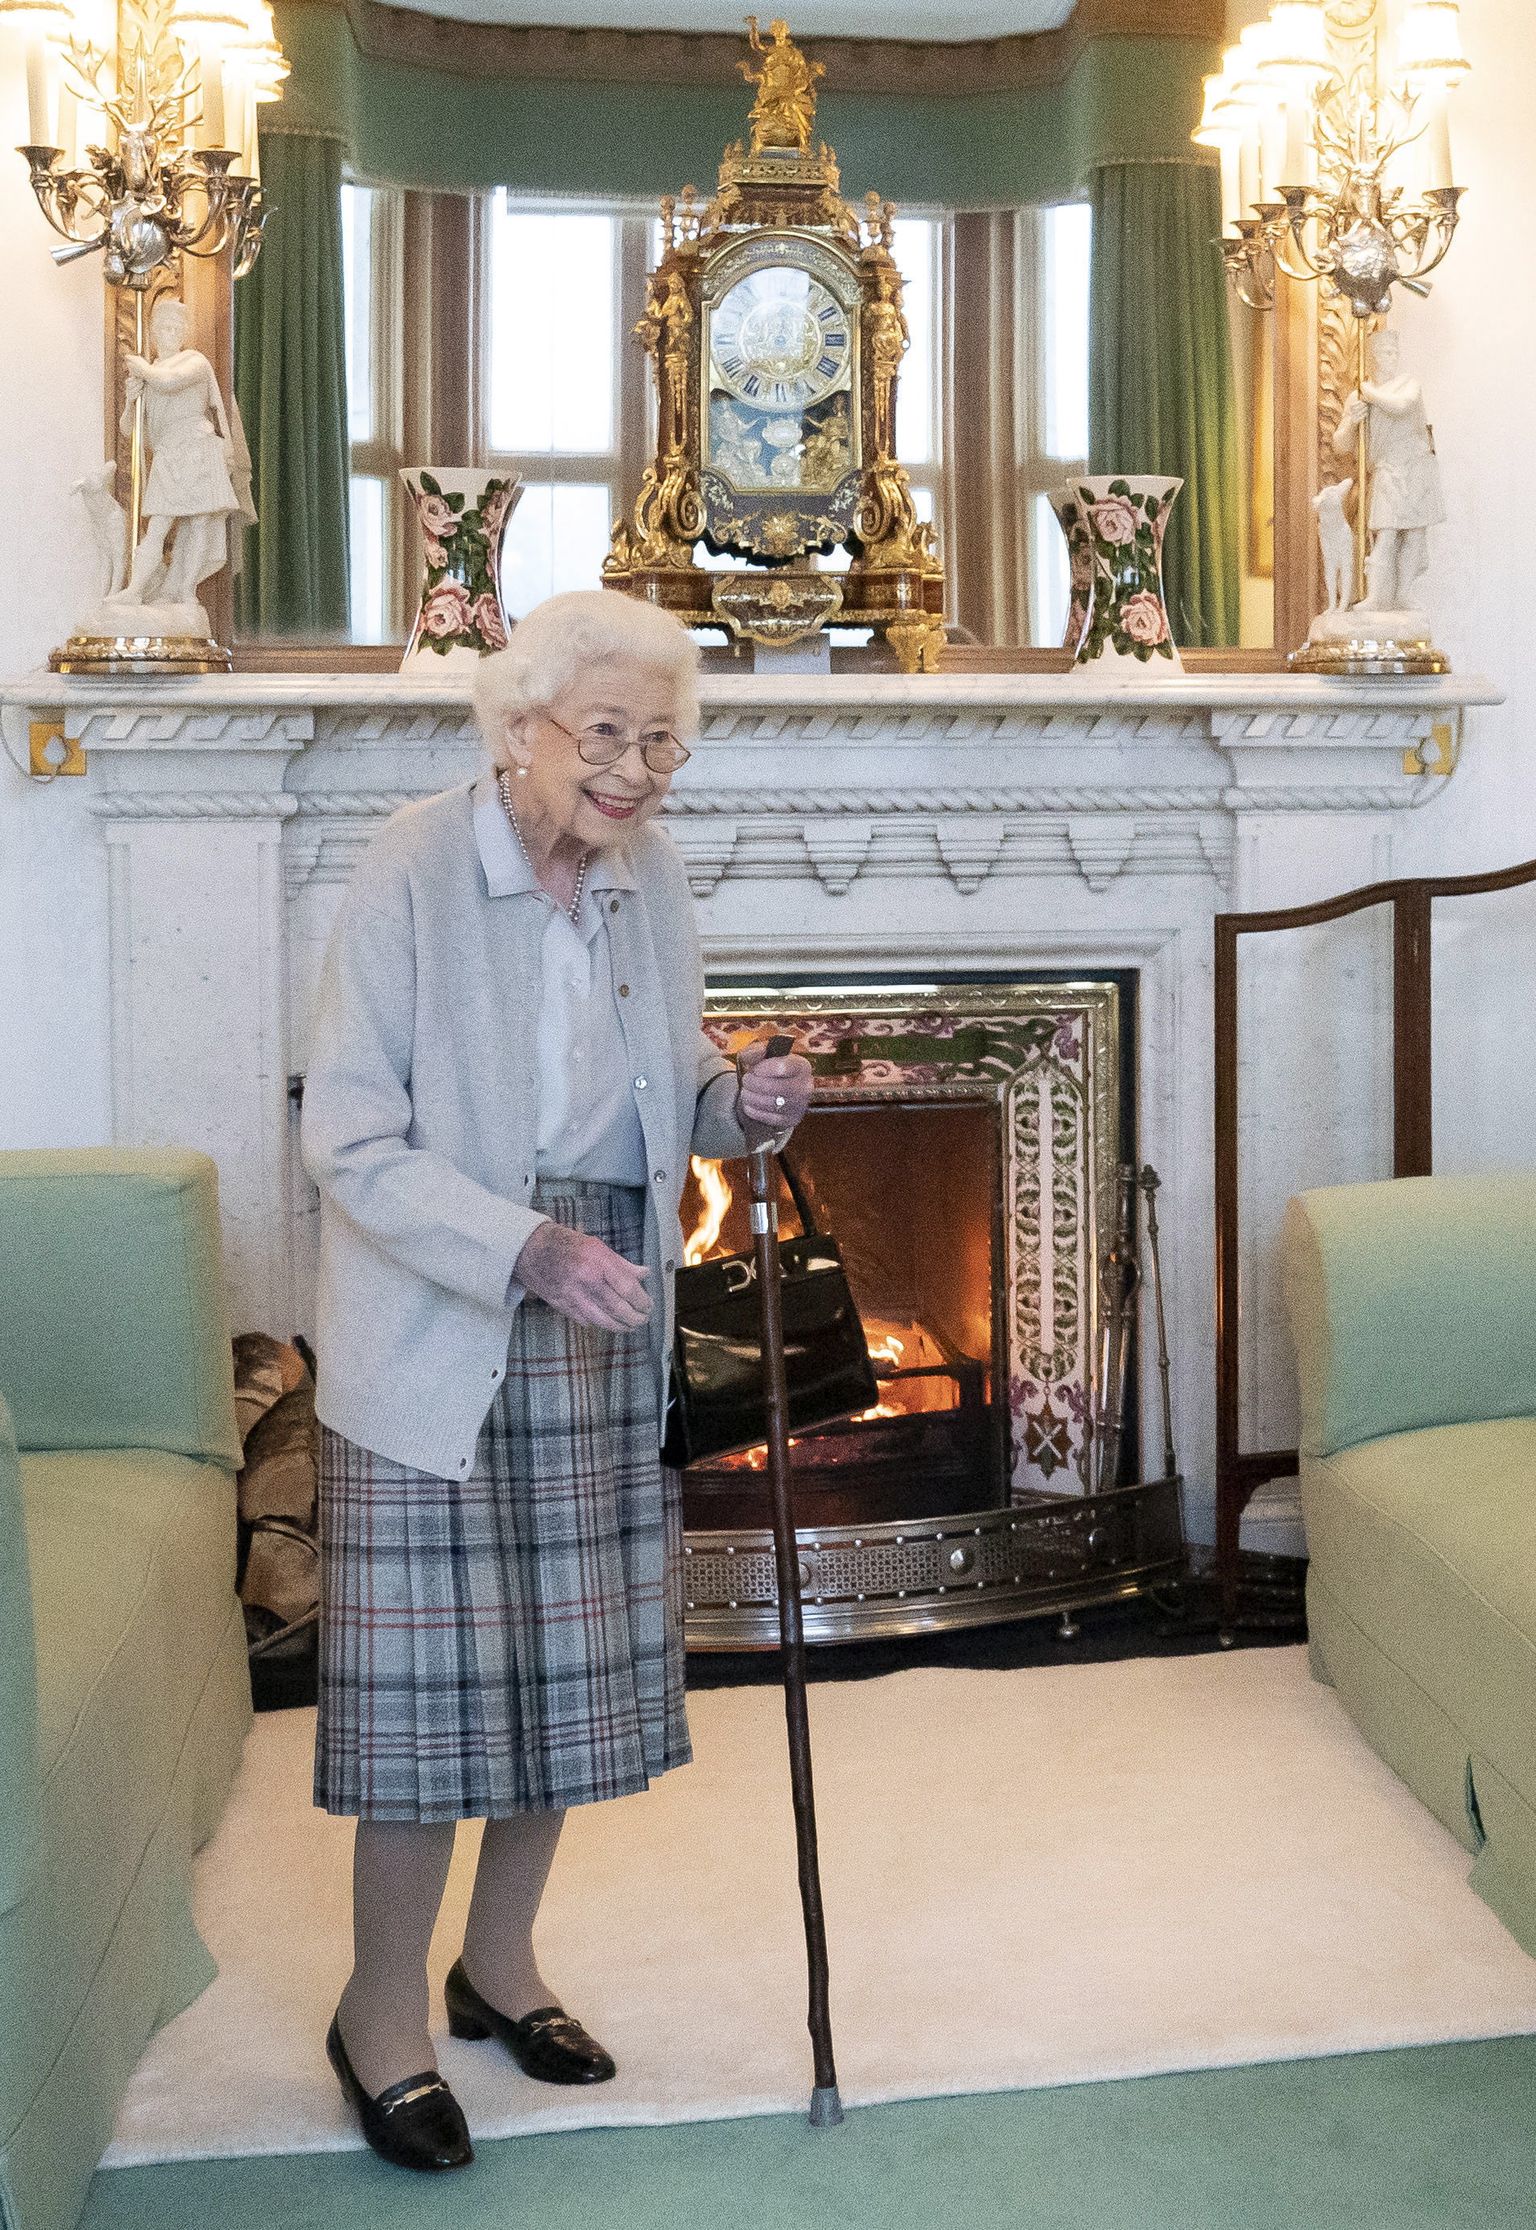 Briti kuninganna Elizabeth II 6. septembril 2022 Šotimaal Balmorali lossis, kus ta võttis vastu konservatiiv Liz Trussi, kelle kinnitas Briti uueks peaministriks. Foto tähelepanelikud vaatajad märkasid kuninganna käel sinist-lillakat laiku